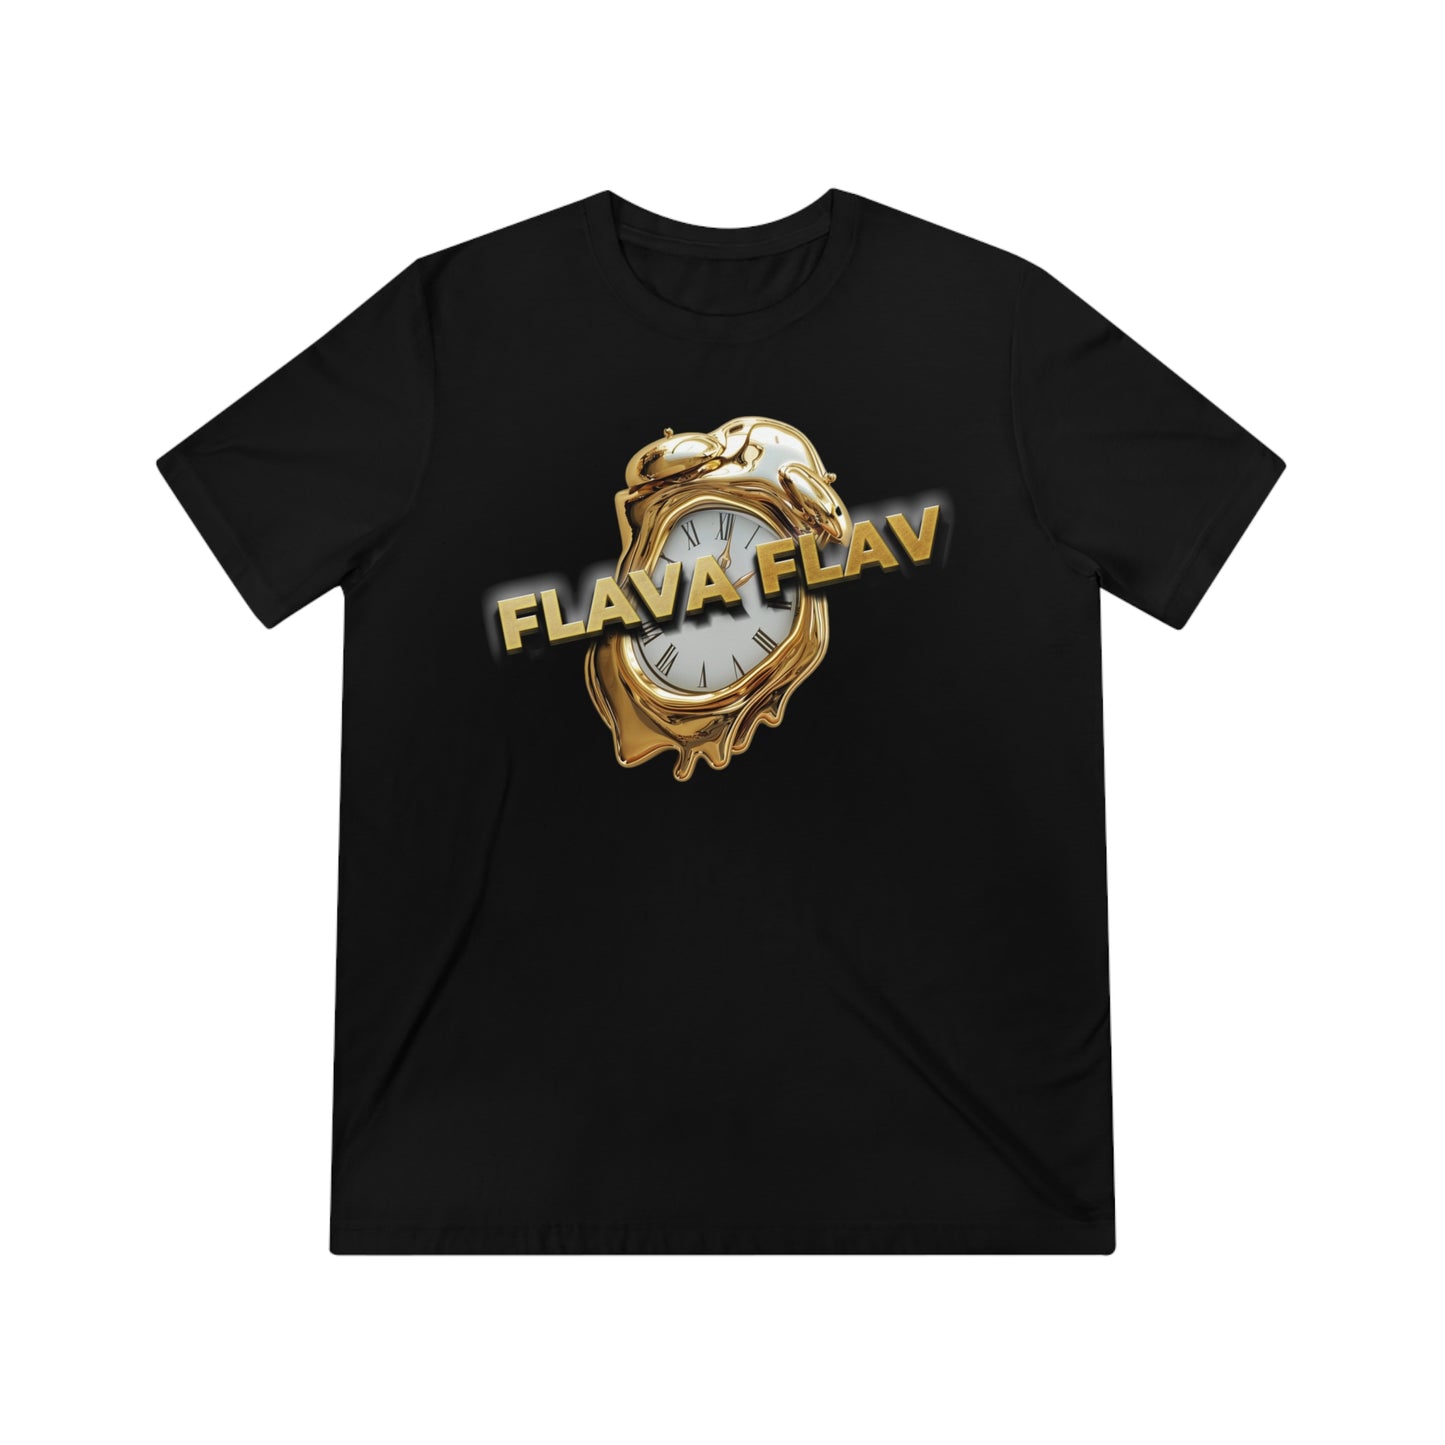 Flava Flav - T-Shirt